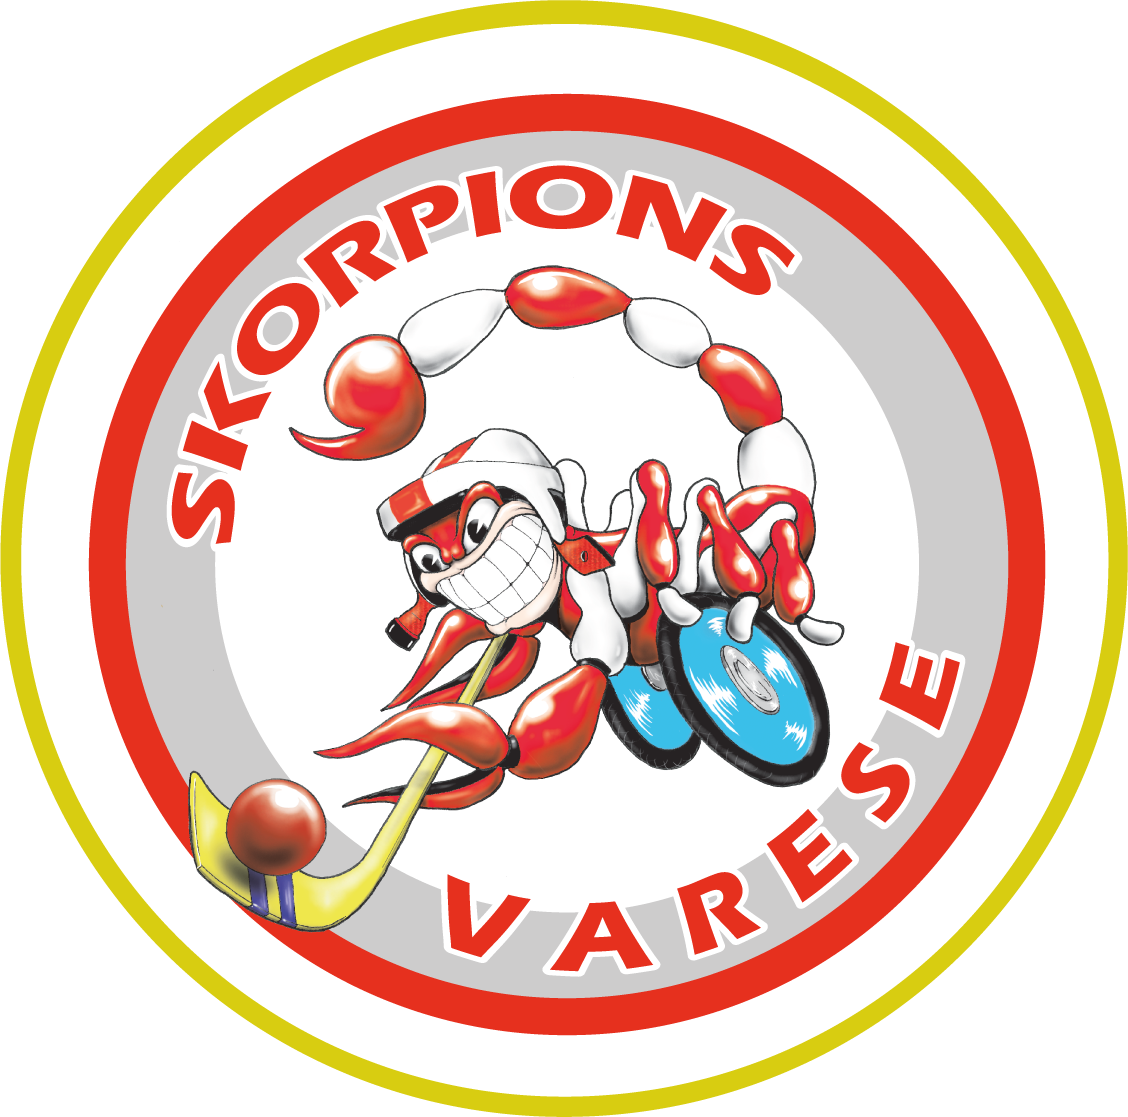 Skorpions VA